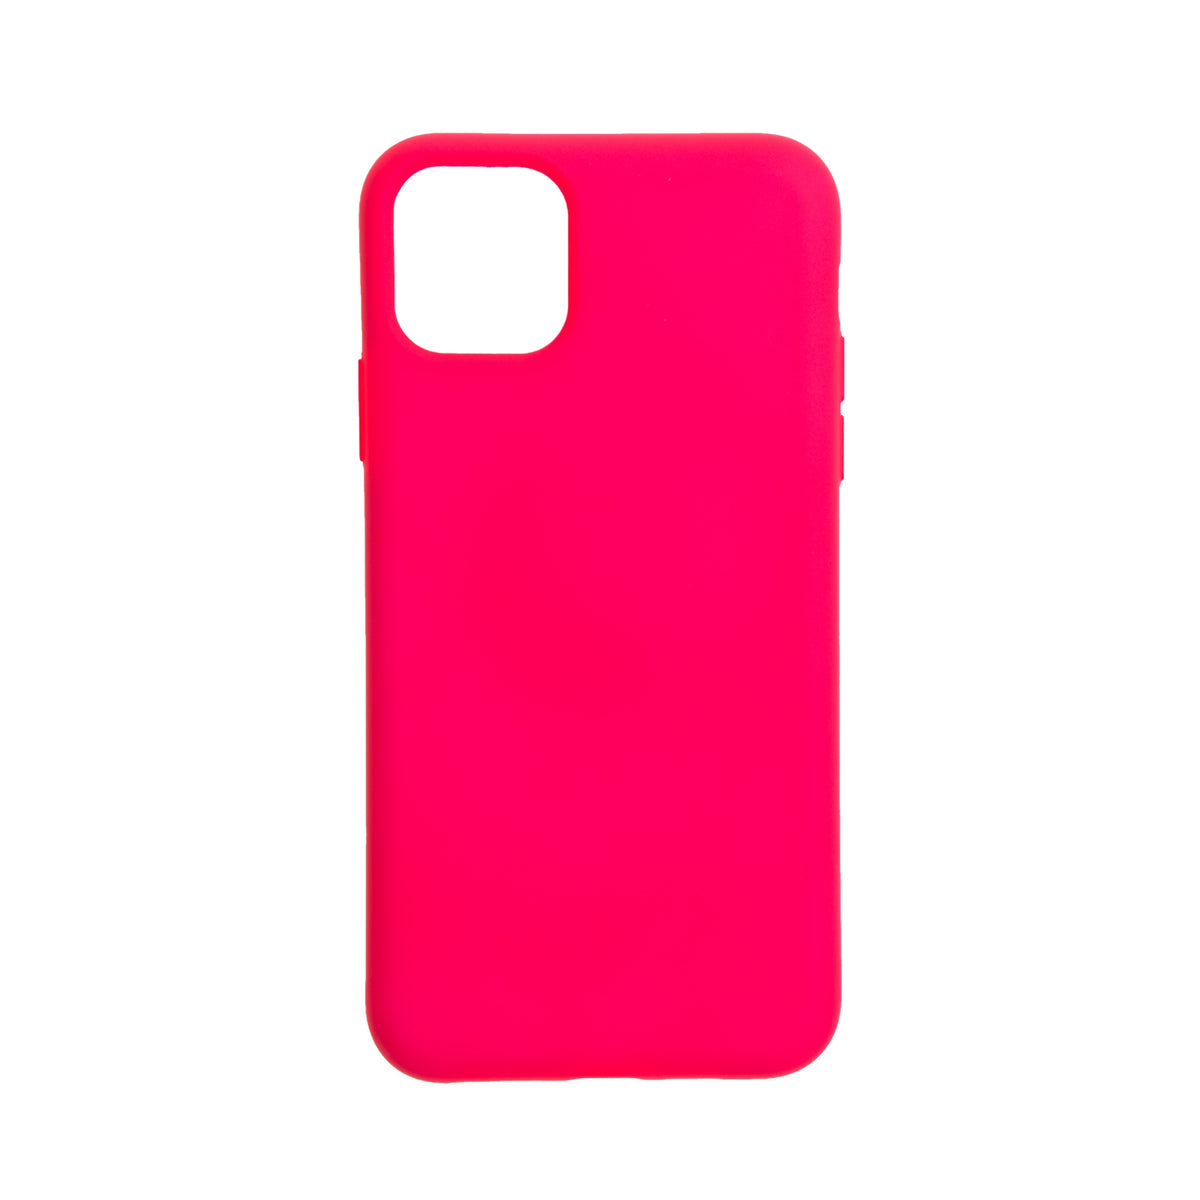 estuches silicon el rey silicon apple iphone 11 pro max color rosado